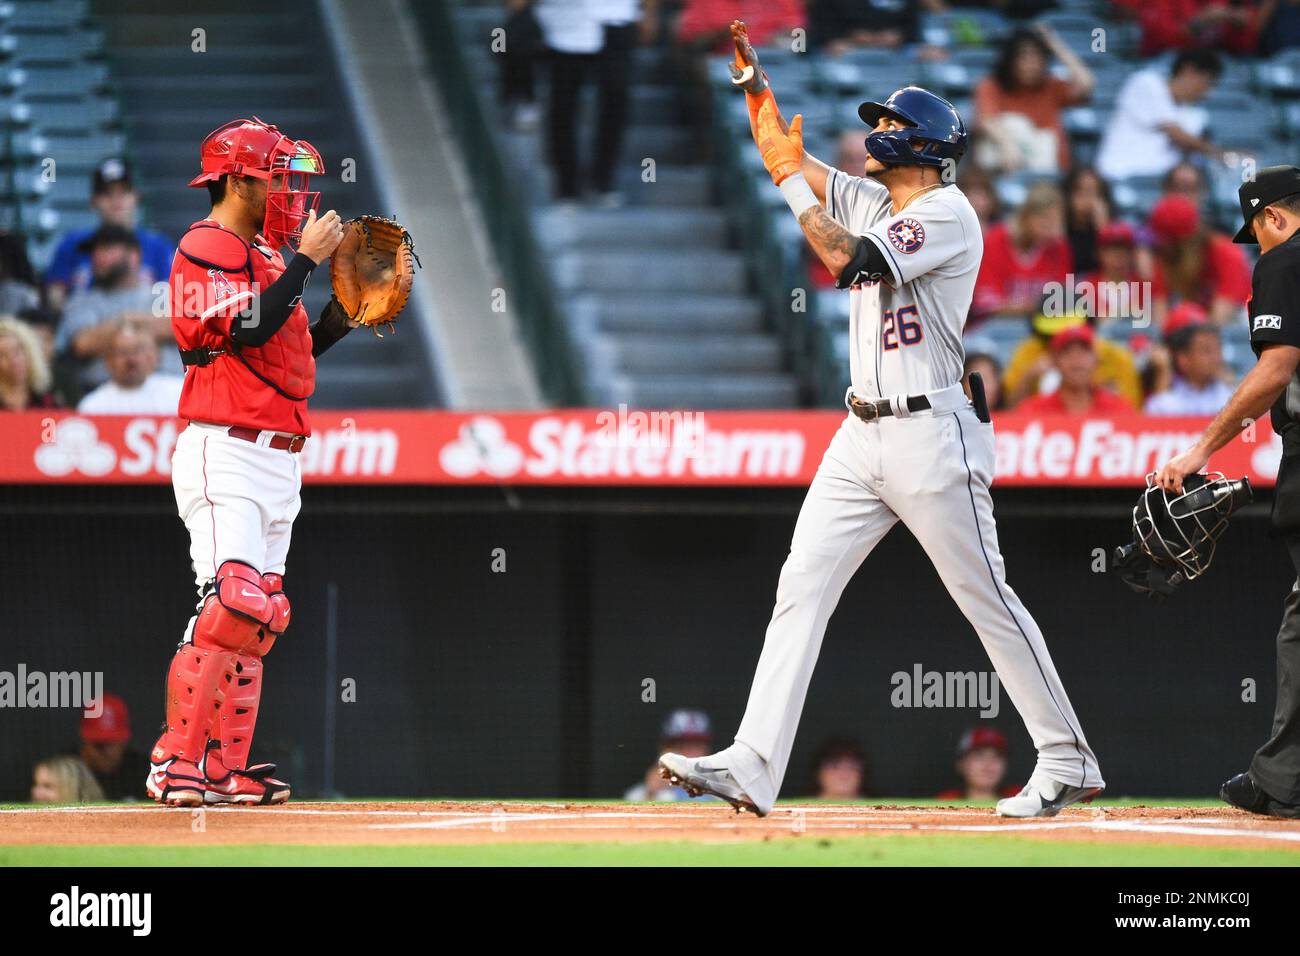 ANAHEIM, CA - SEPTEMBER 20: Houston Astros right fielder Jose Siri